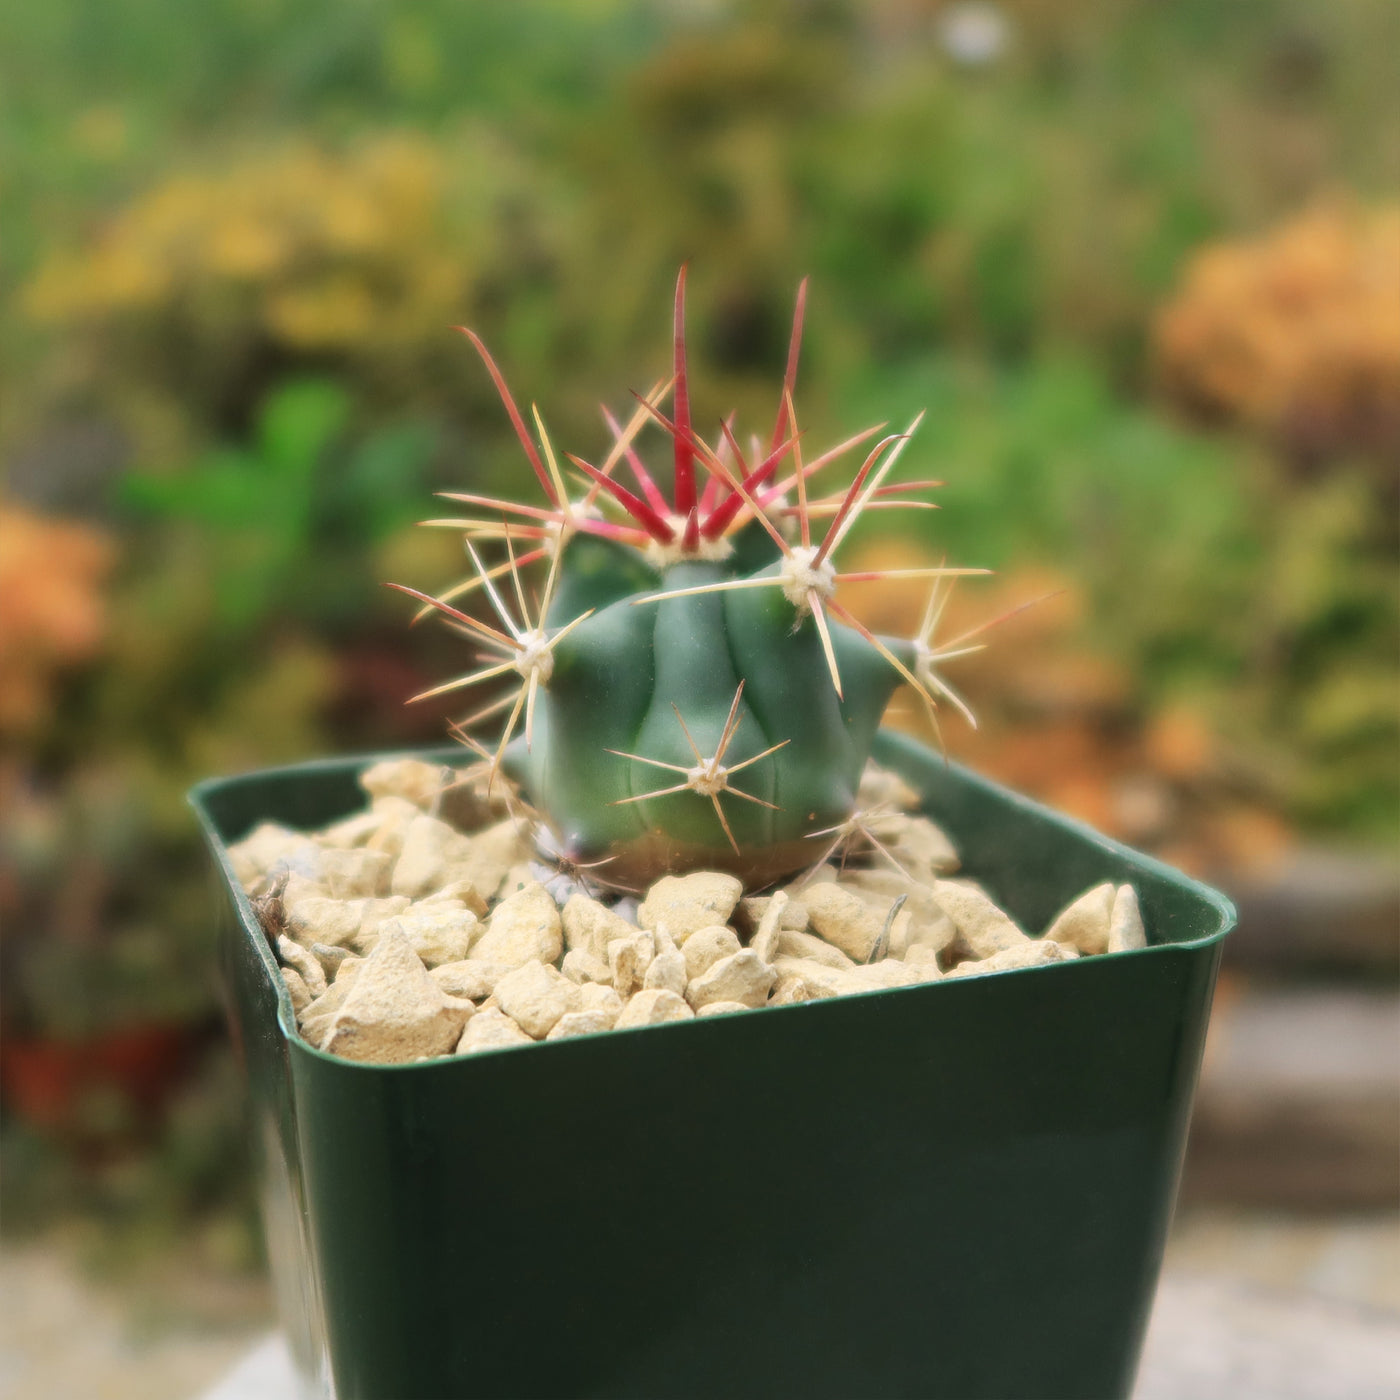 Fishhook Barrel Cactus ‘Ferocactus wislizeni’